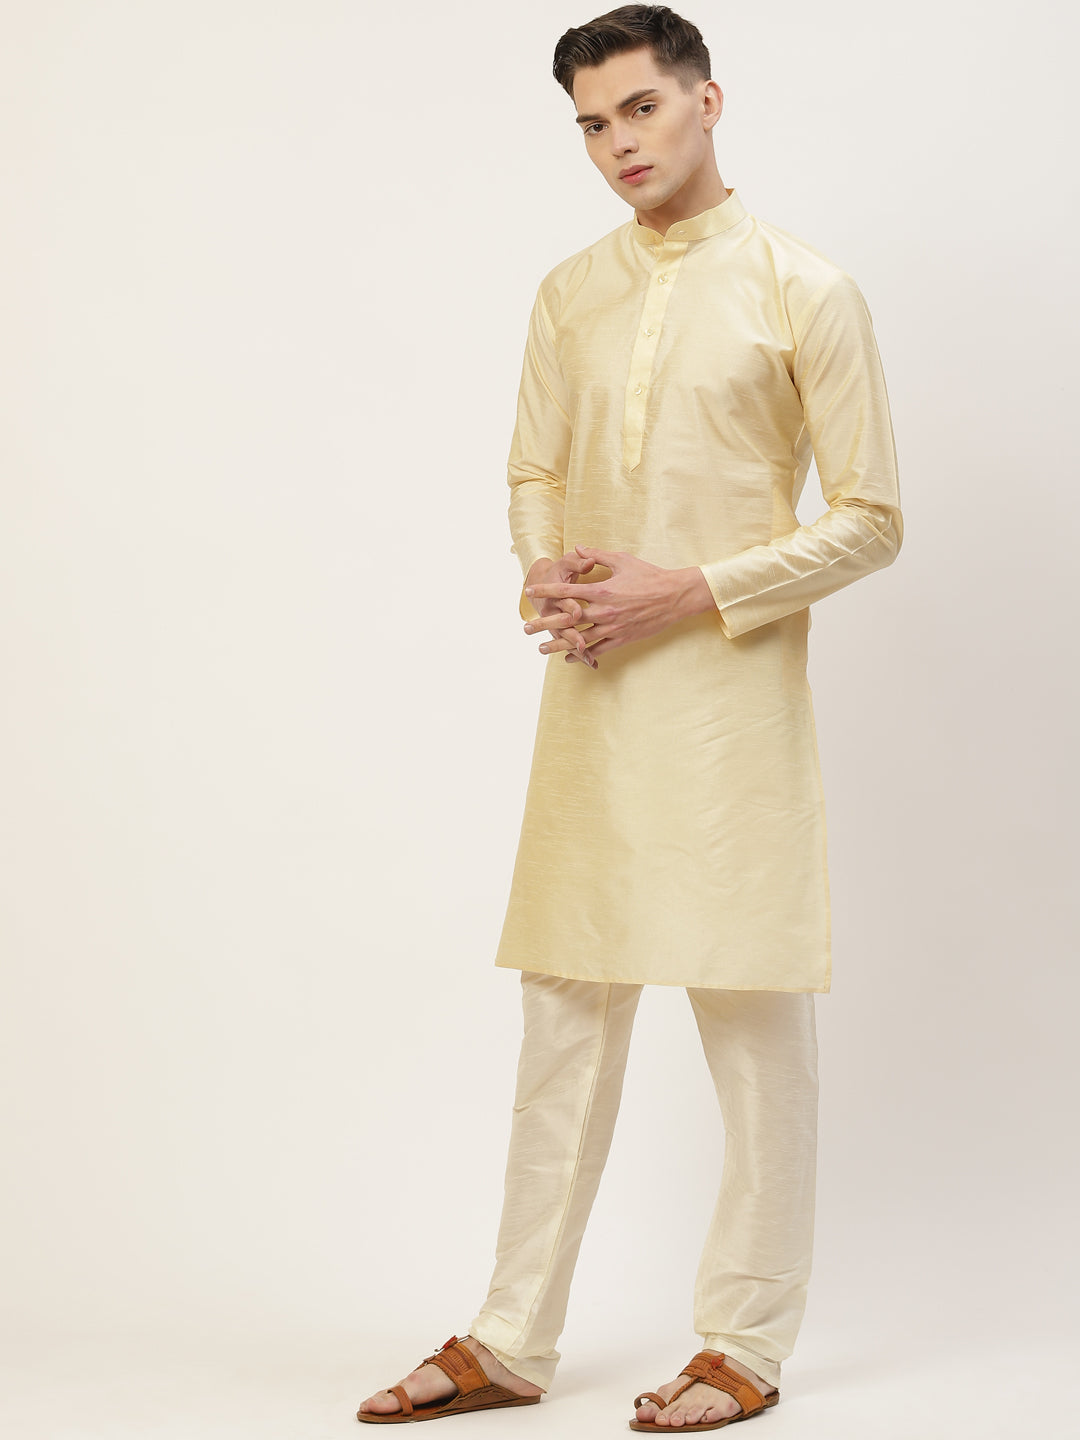 Men's Solid Kurta Pyjama With Floral Maroon Printed Nehru Jacket